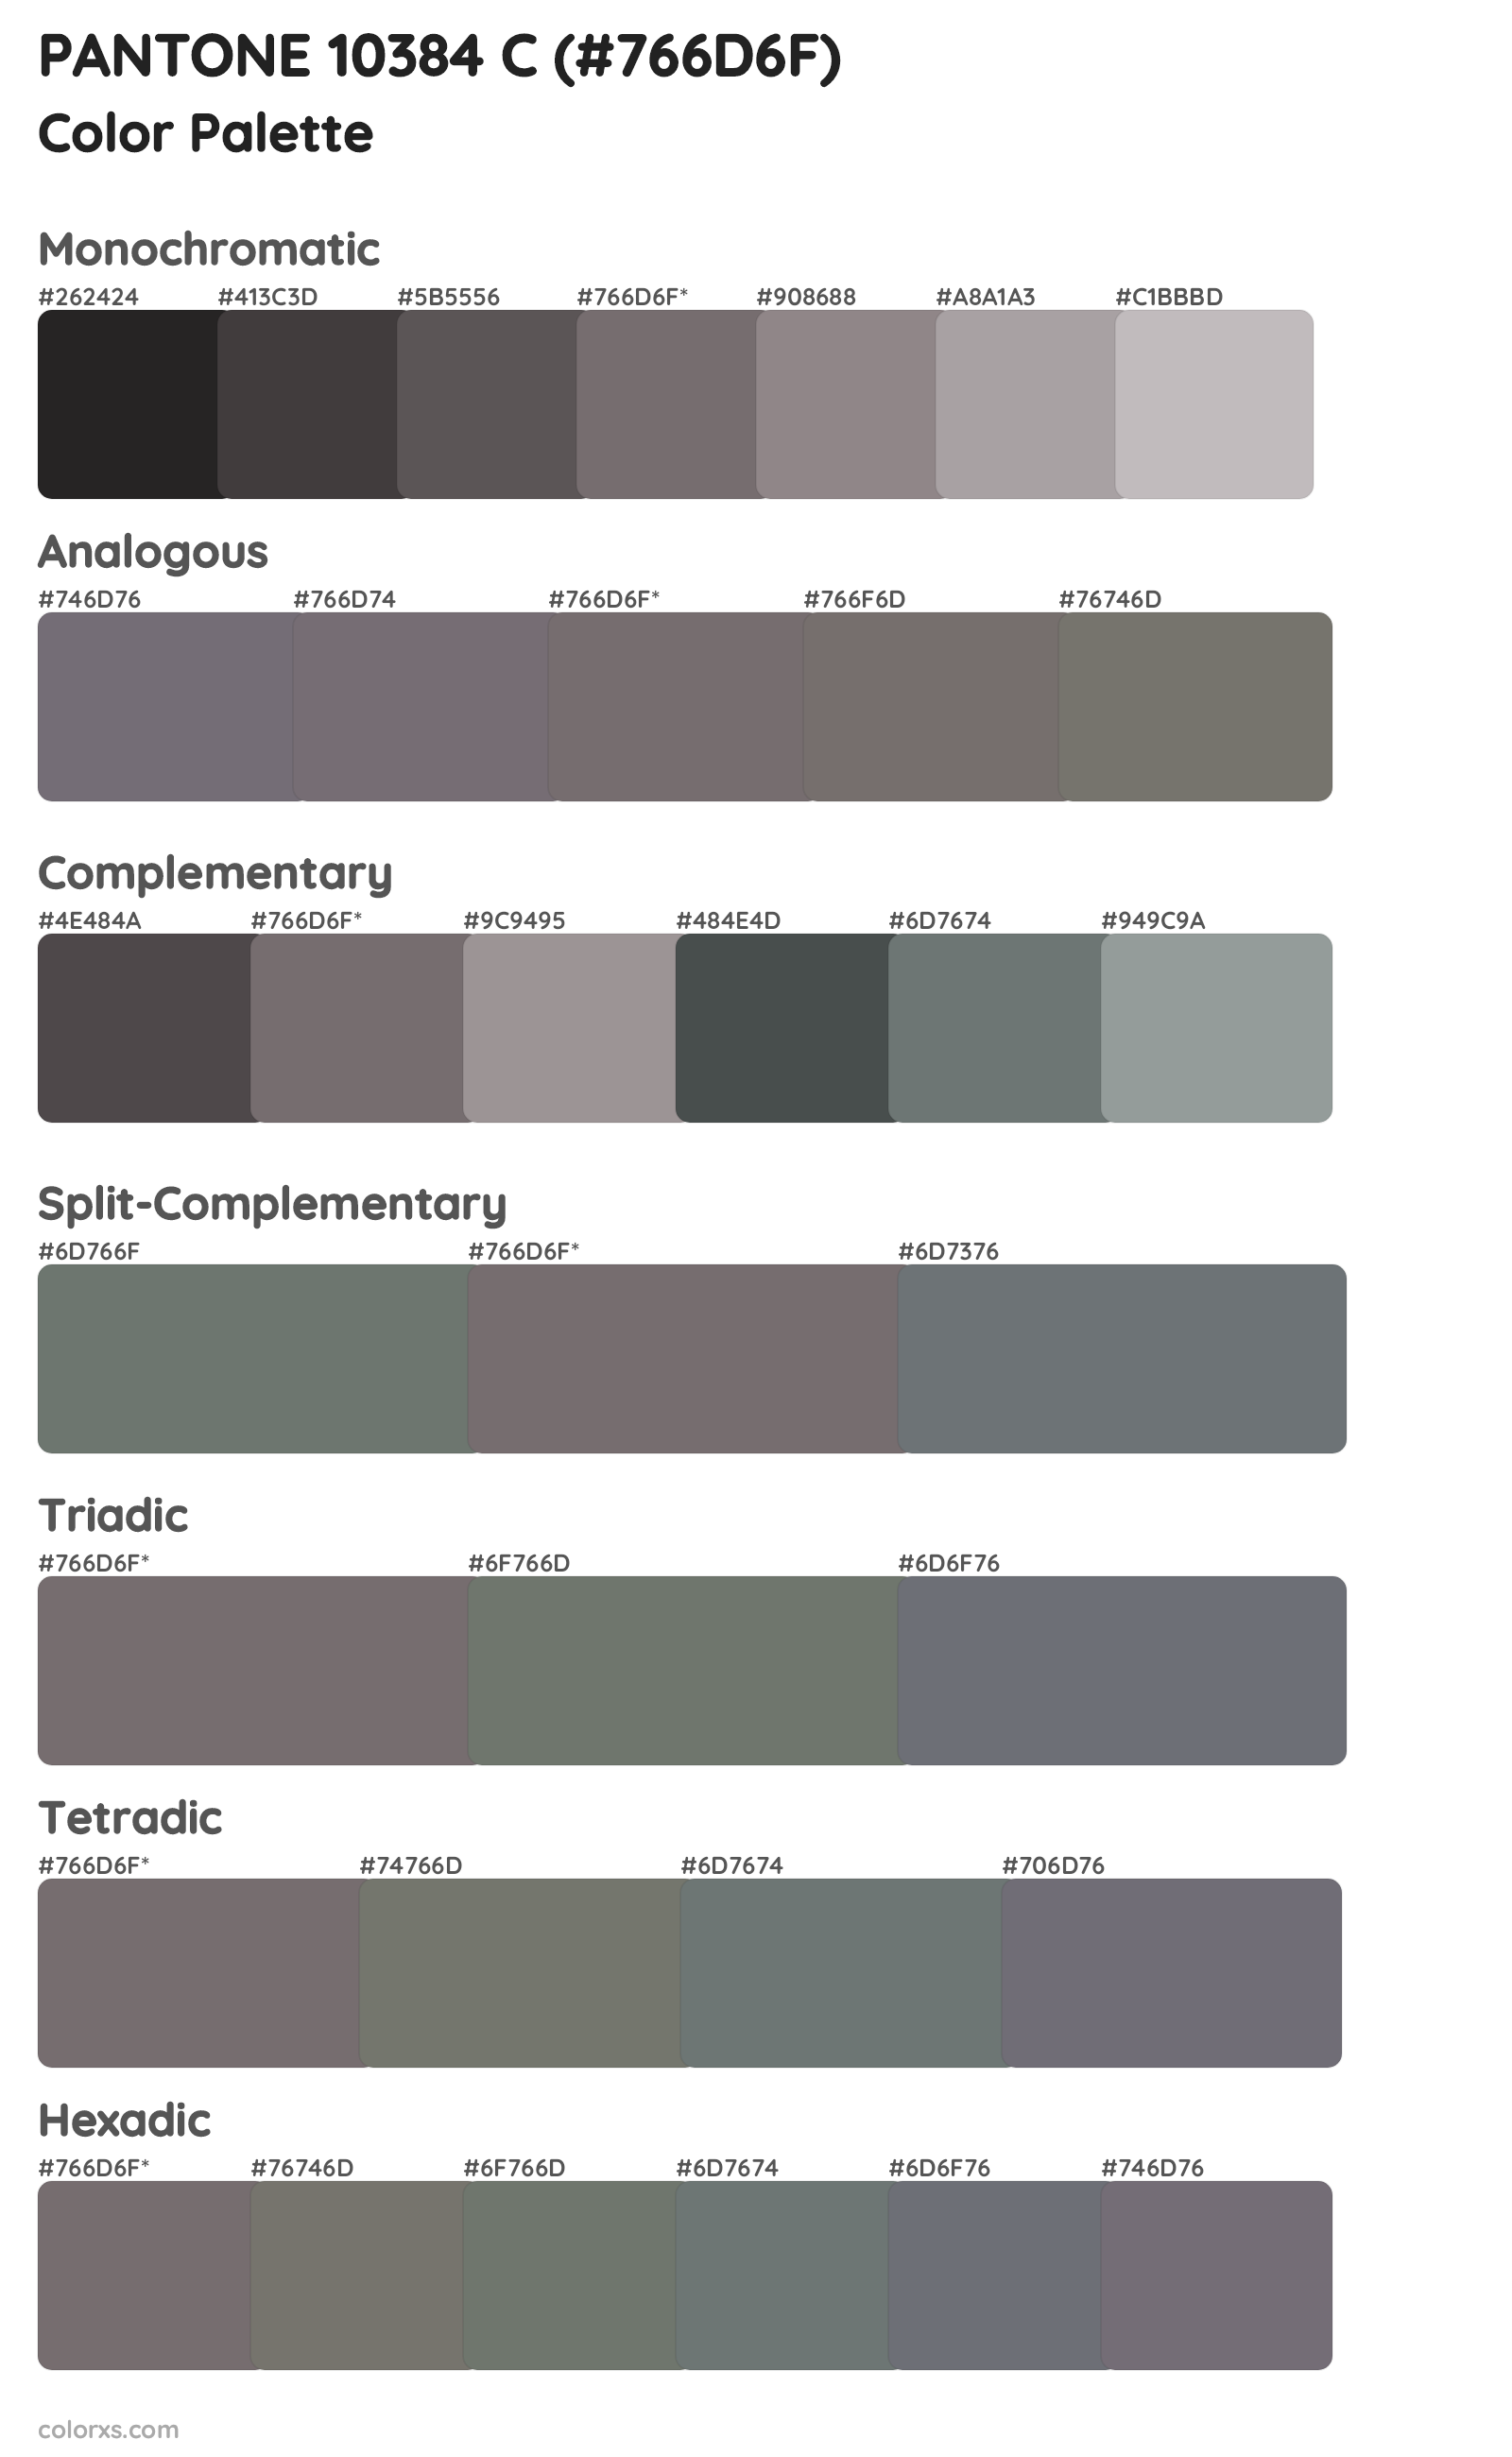 PANTONE 10384 C Color Scheme Palettes